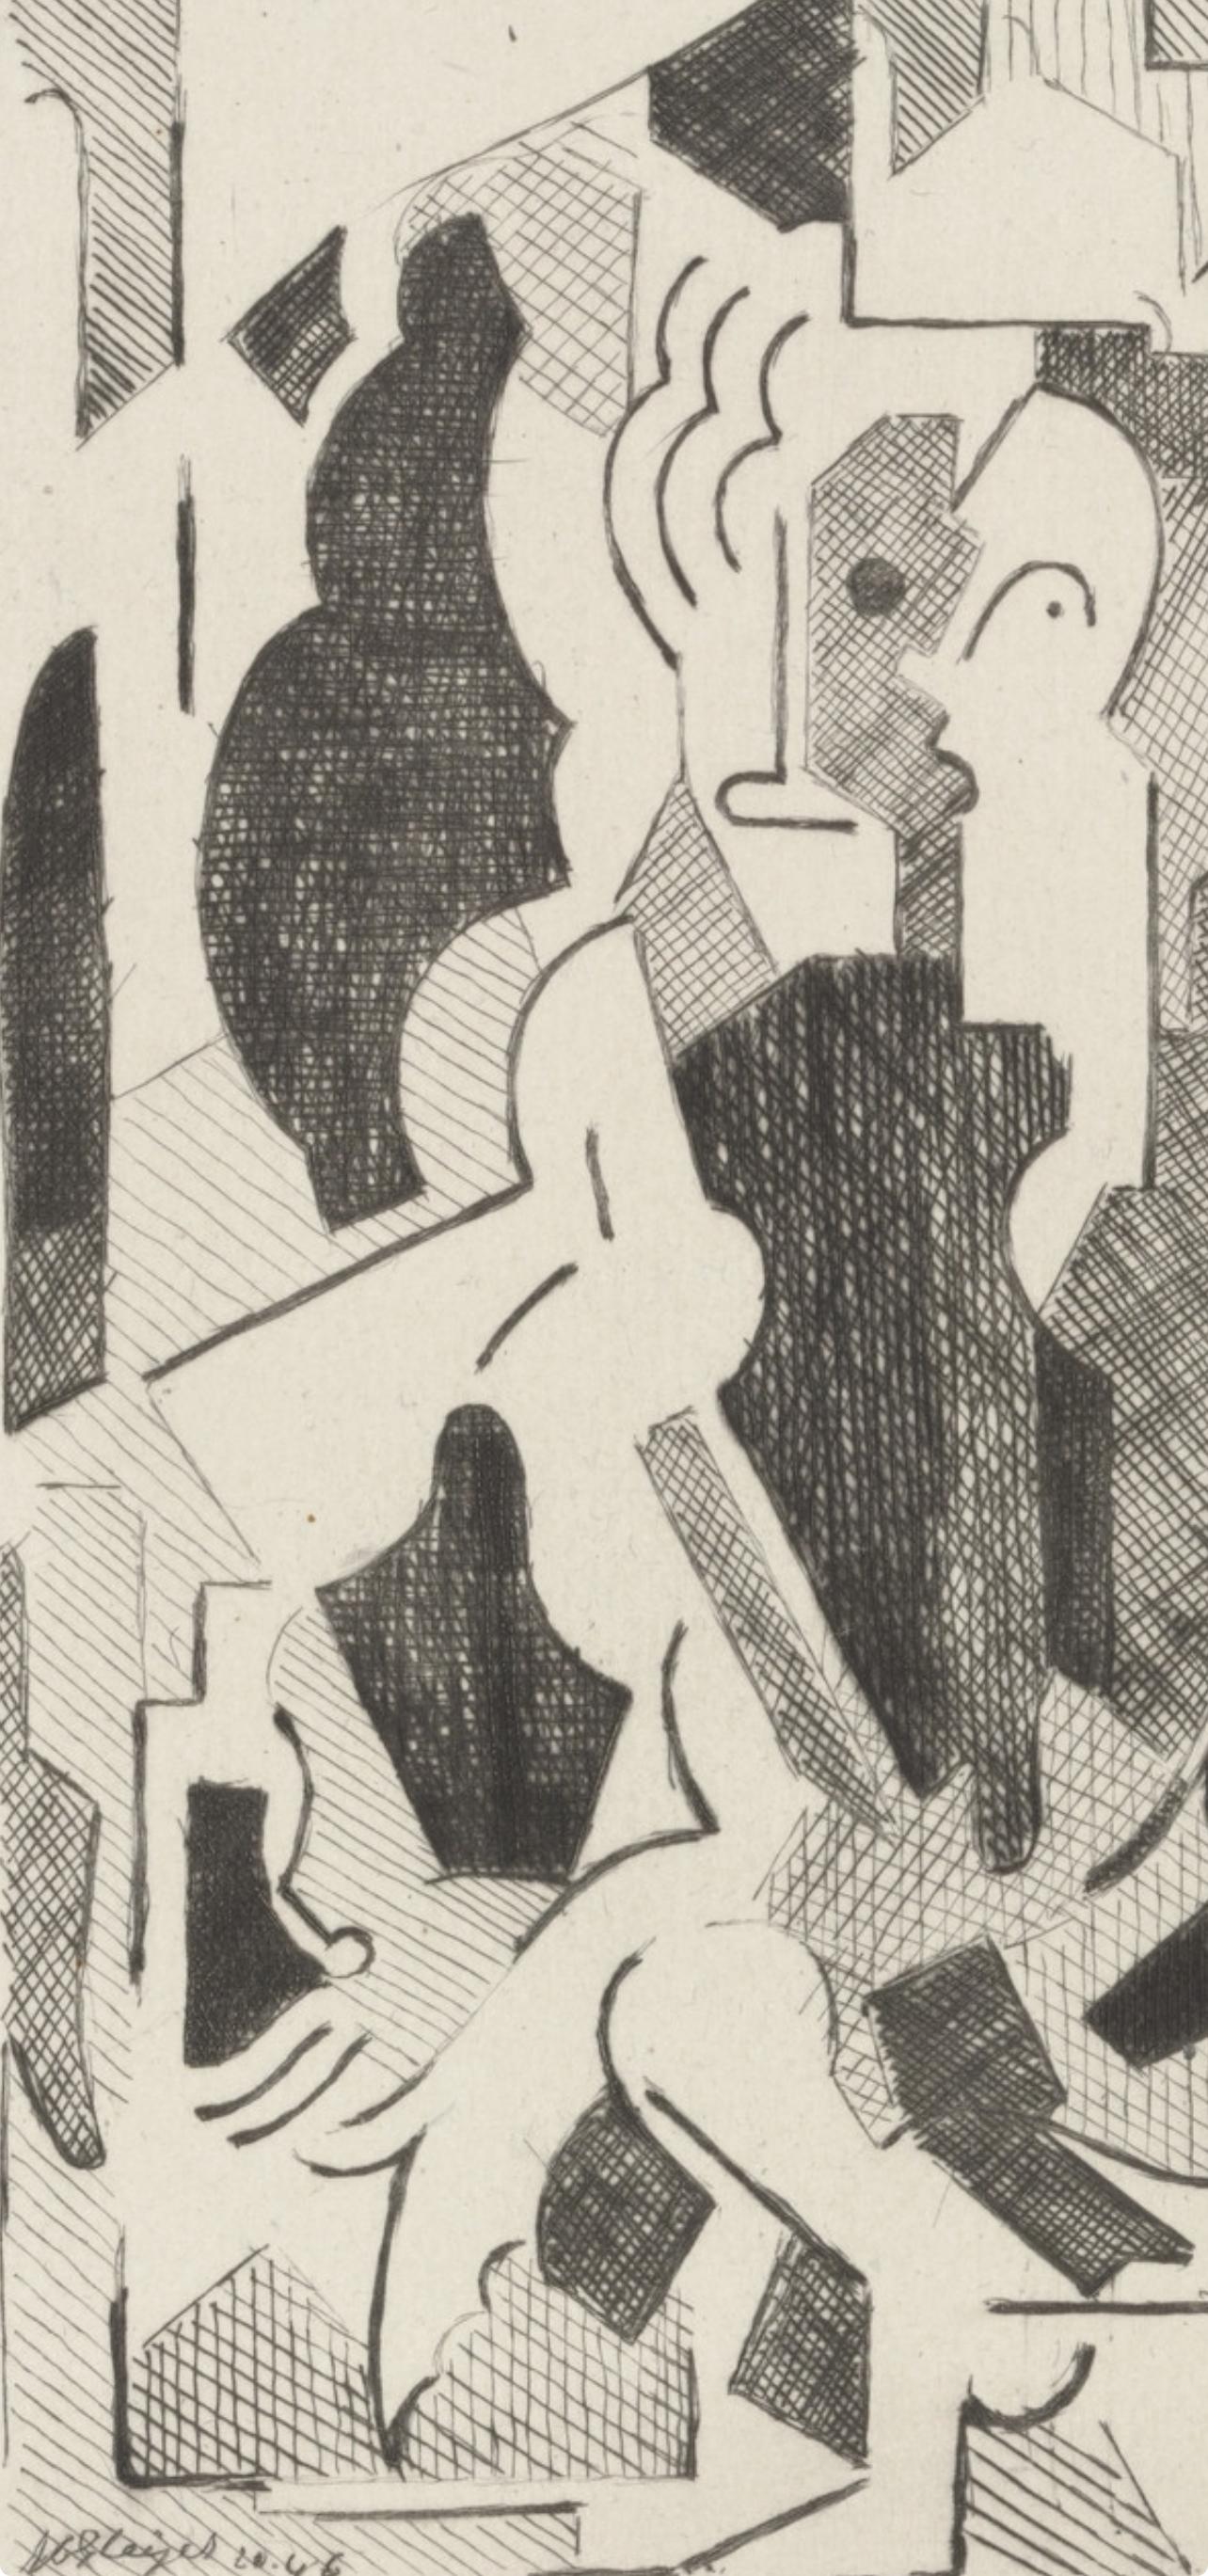 Gleizes, Composition du cubisme (après) - Print de Albert Gleizes